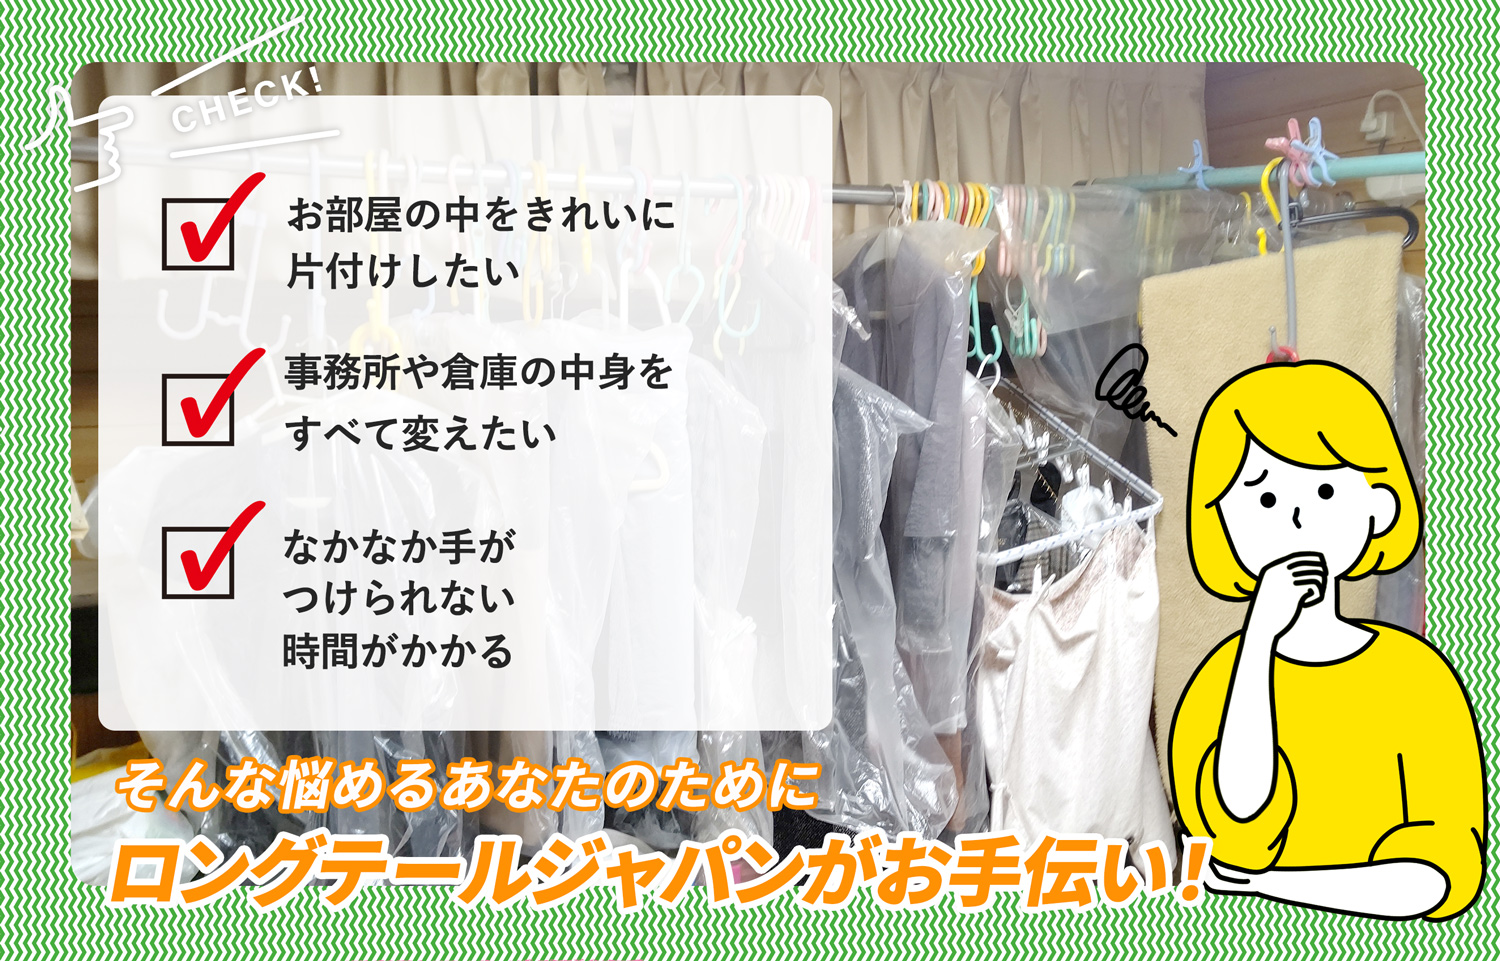 松戸市でお部屋の中から店舗、事務所、倉庫まで自分達で片付けられない場合はお部屋の片付け隊がやらせていただきます。